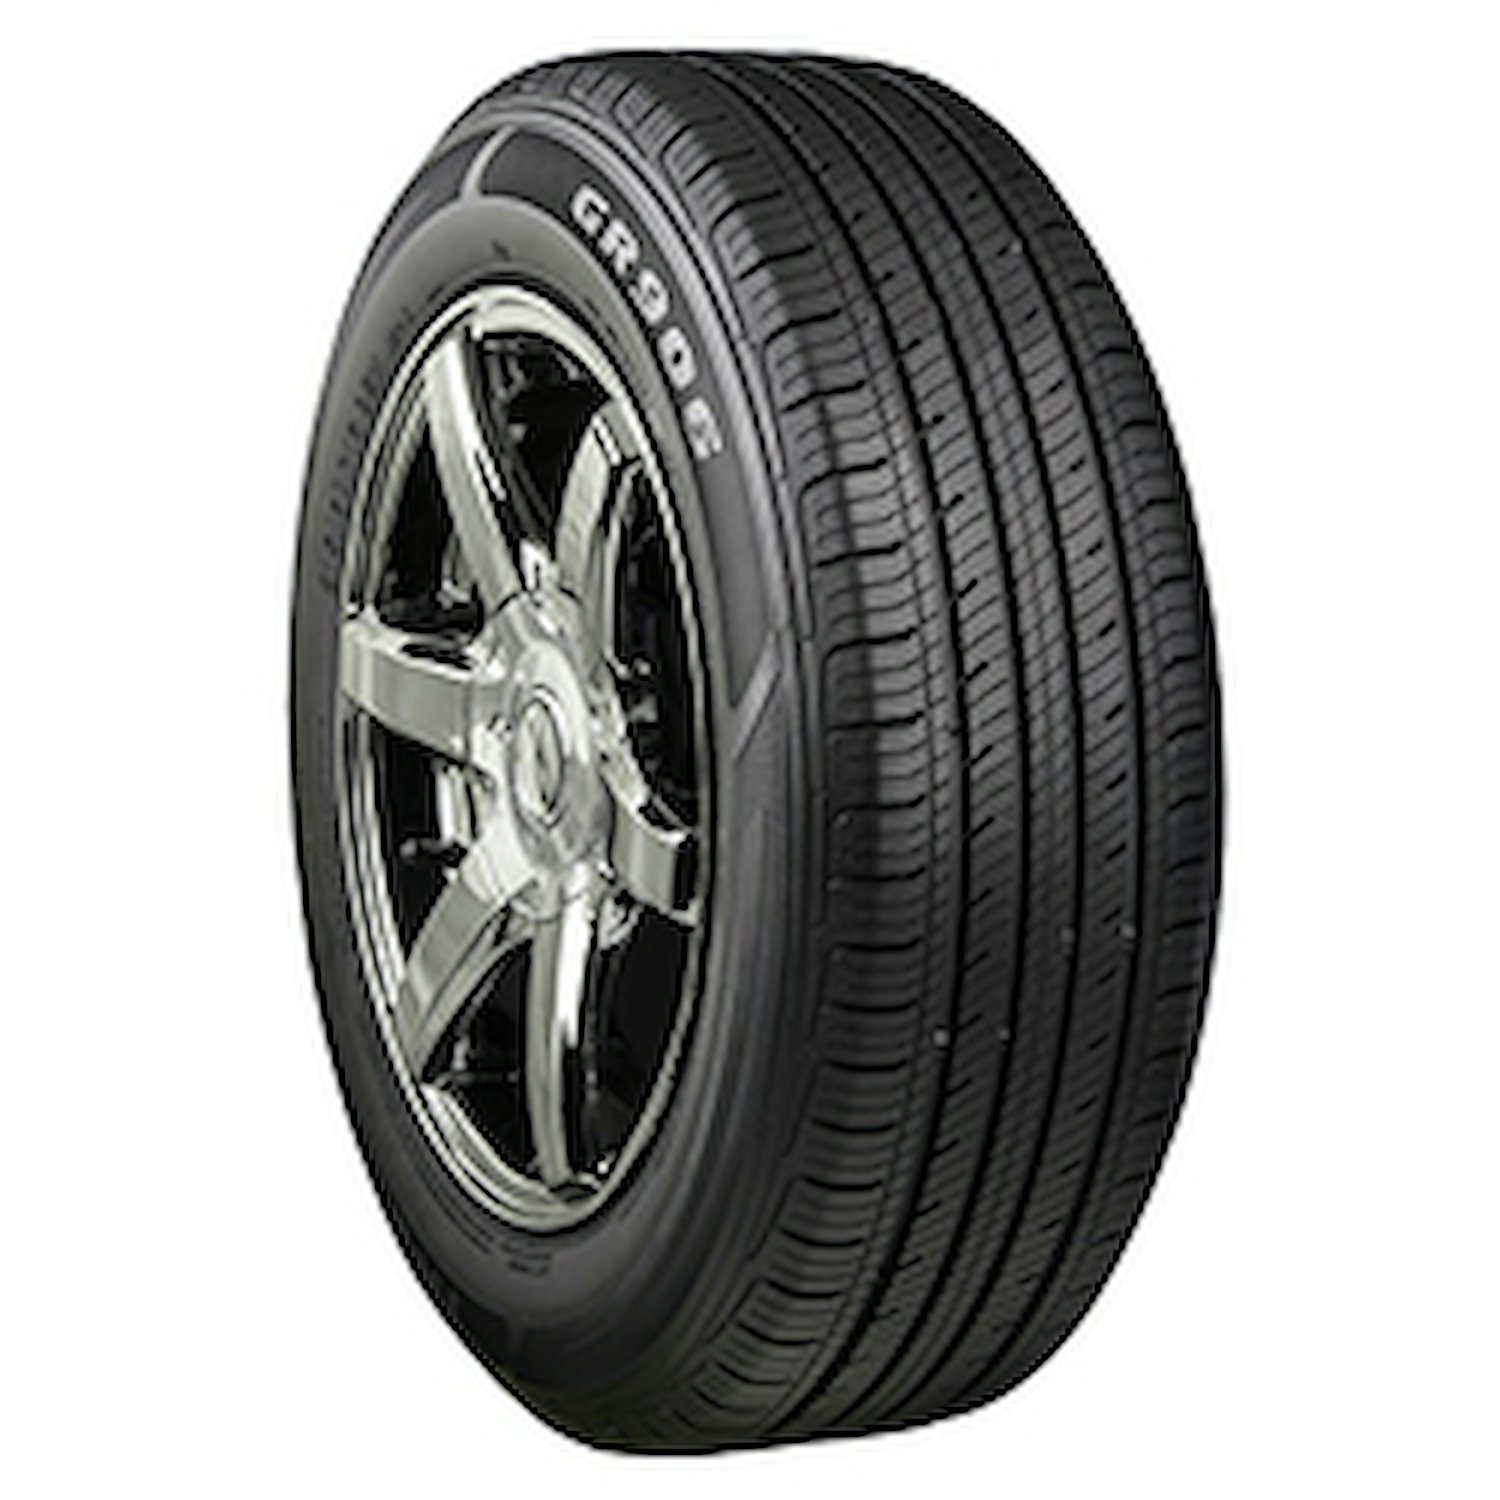 GR906 Tire, 215/65R17 99T